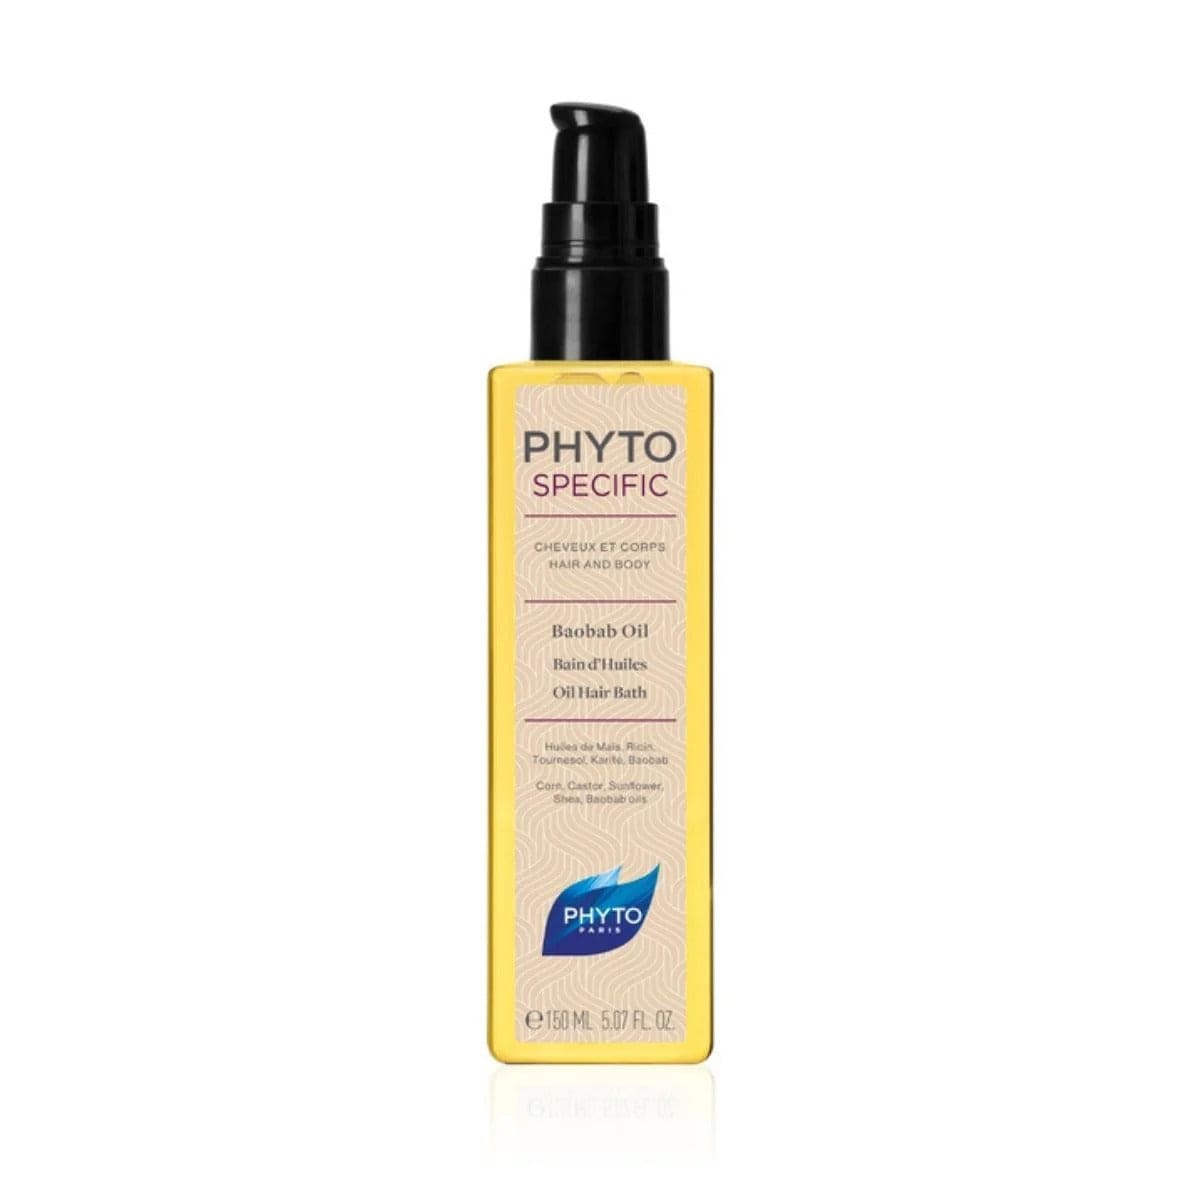 PHYTO Soins & Beauté Phytospecific (bain d'huiles) 150ml